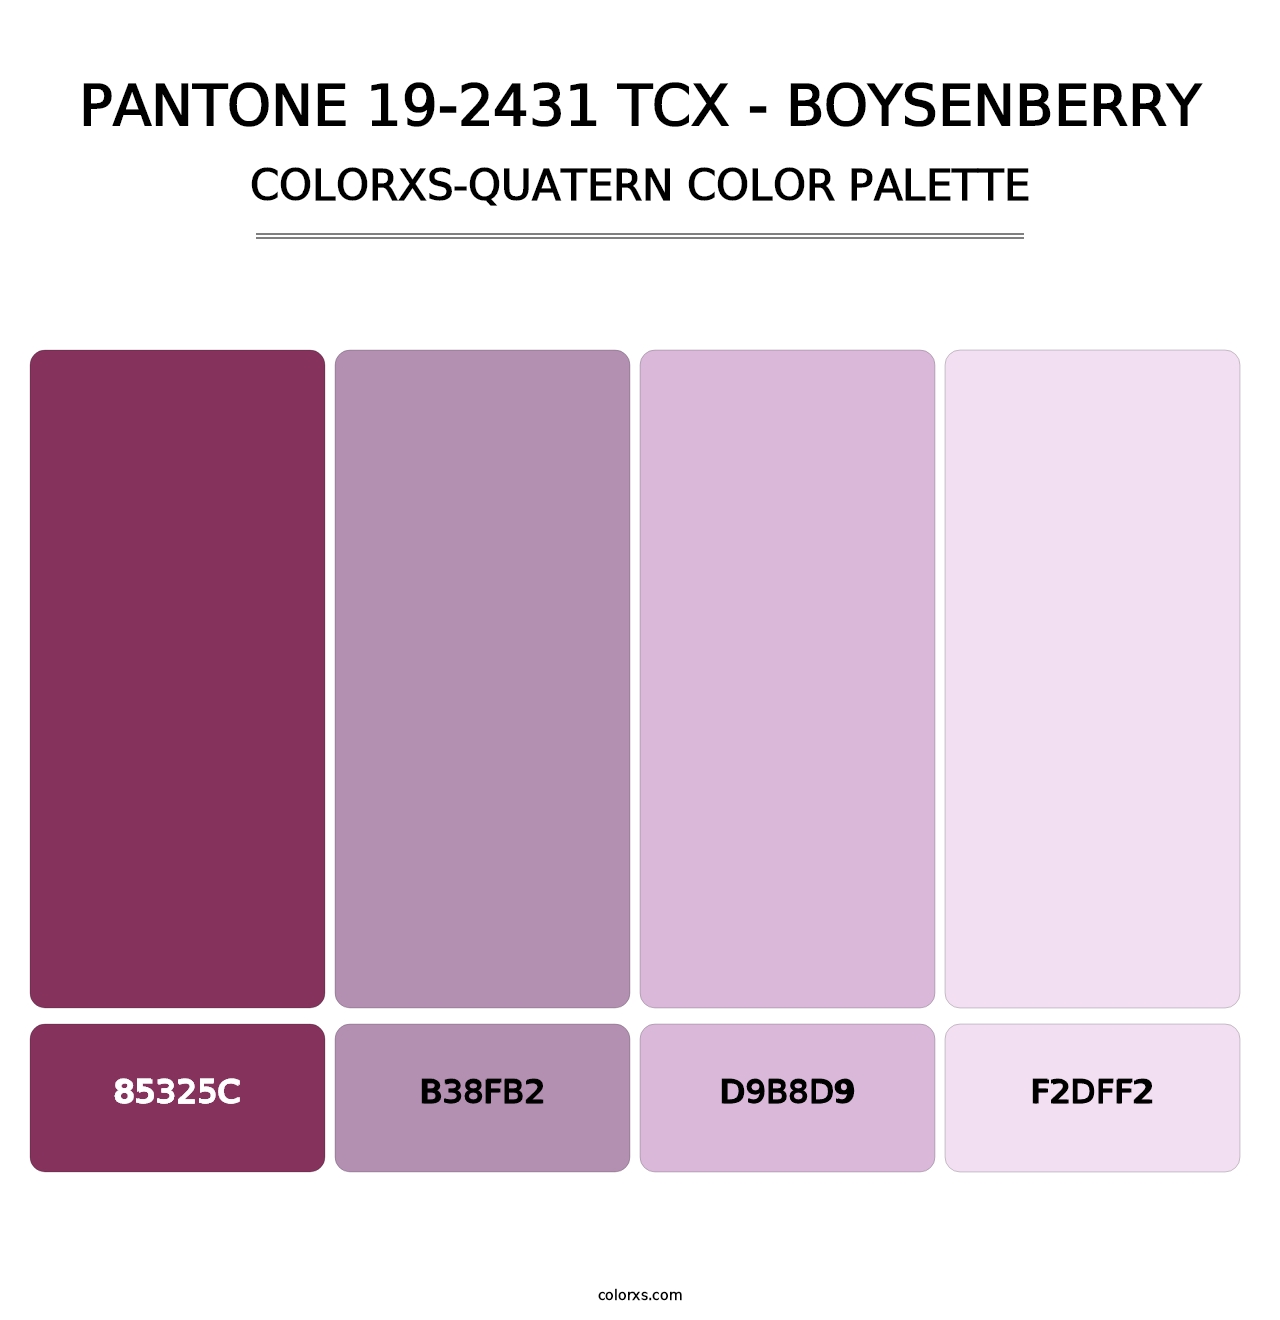 PANTONE 19-2431 TCX - Boysenberry - Colorxs Quatern Palette